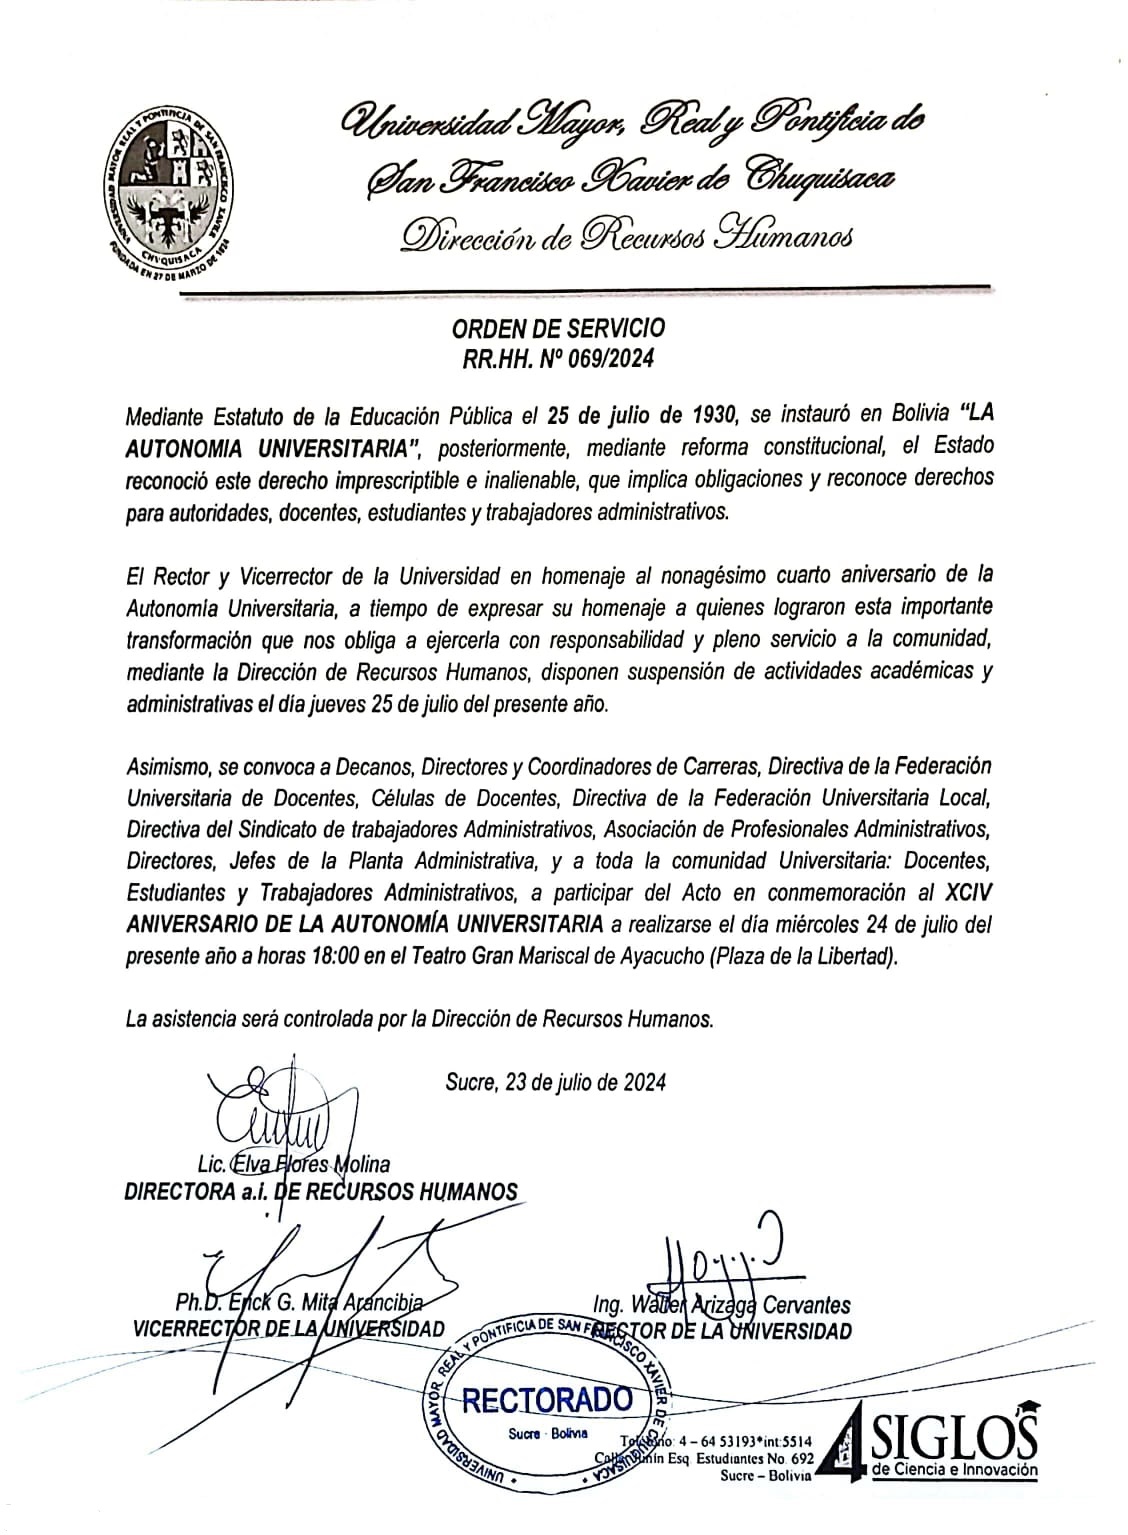 ORDEN DE SERVICIO Nº 069/2024, CONMEMORACIÓN AL XCIV ANIVERSARIO DE LA AUTONOMÍA UNIVERSITARIA.